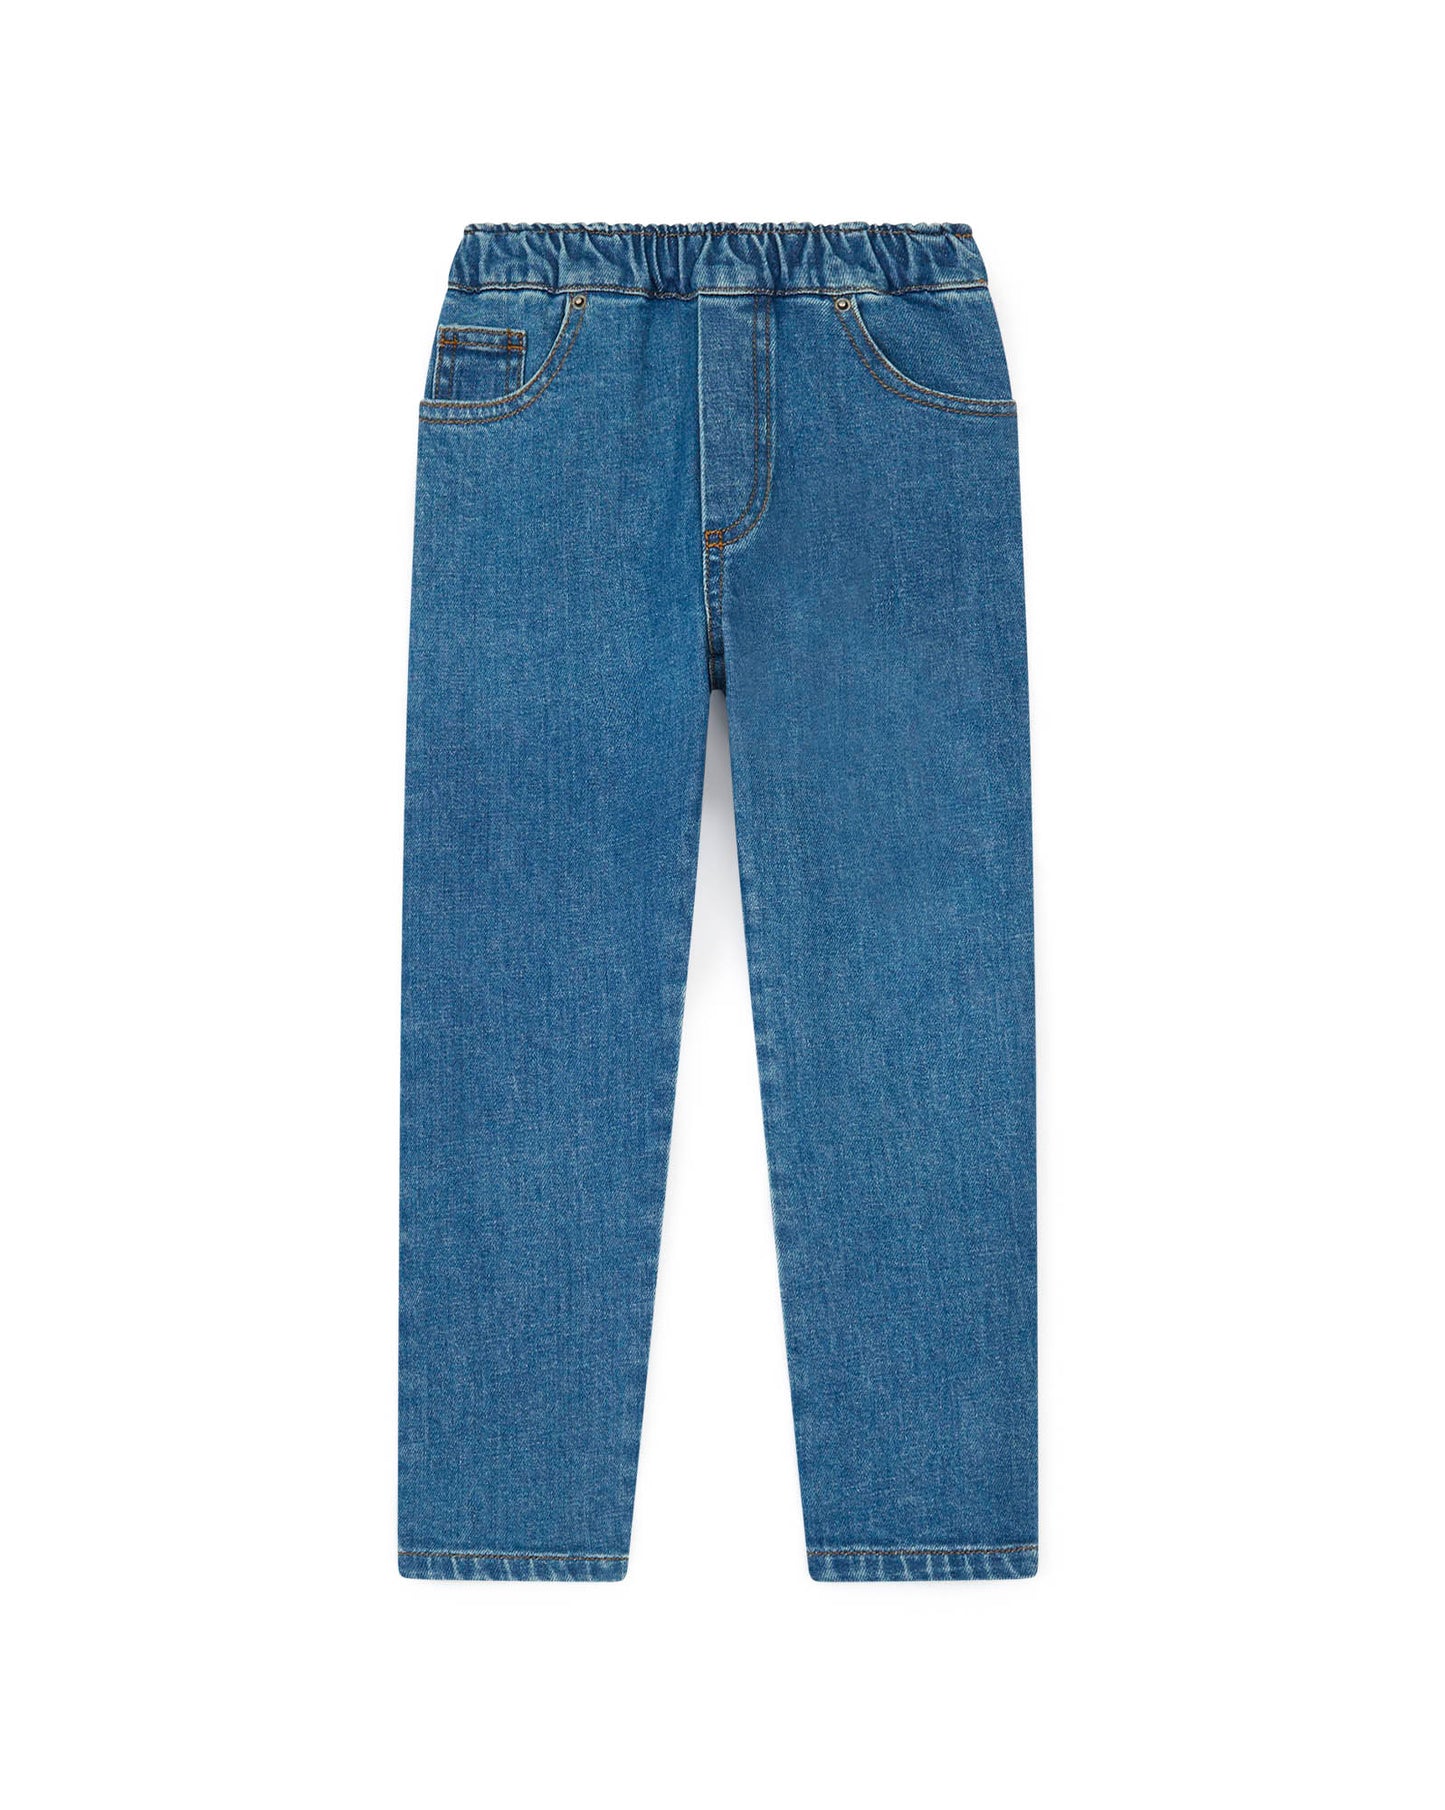 Trousers - Stockmith Blue Denim Stretch